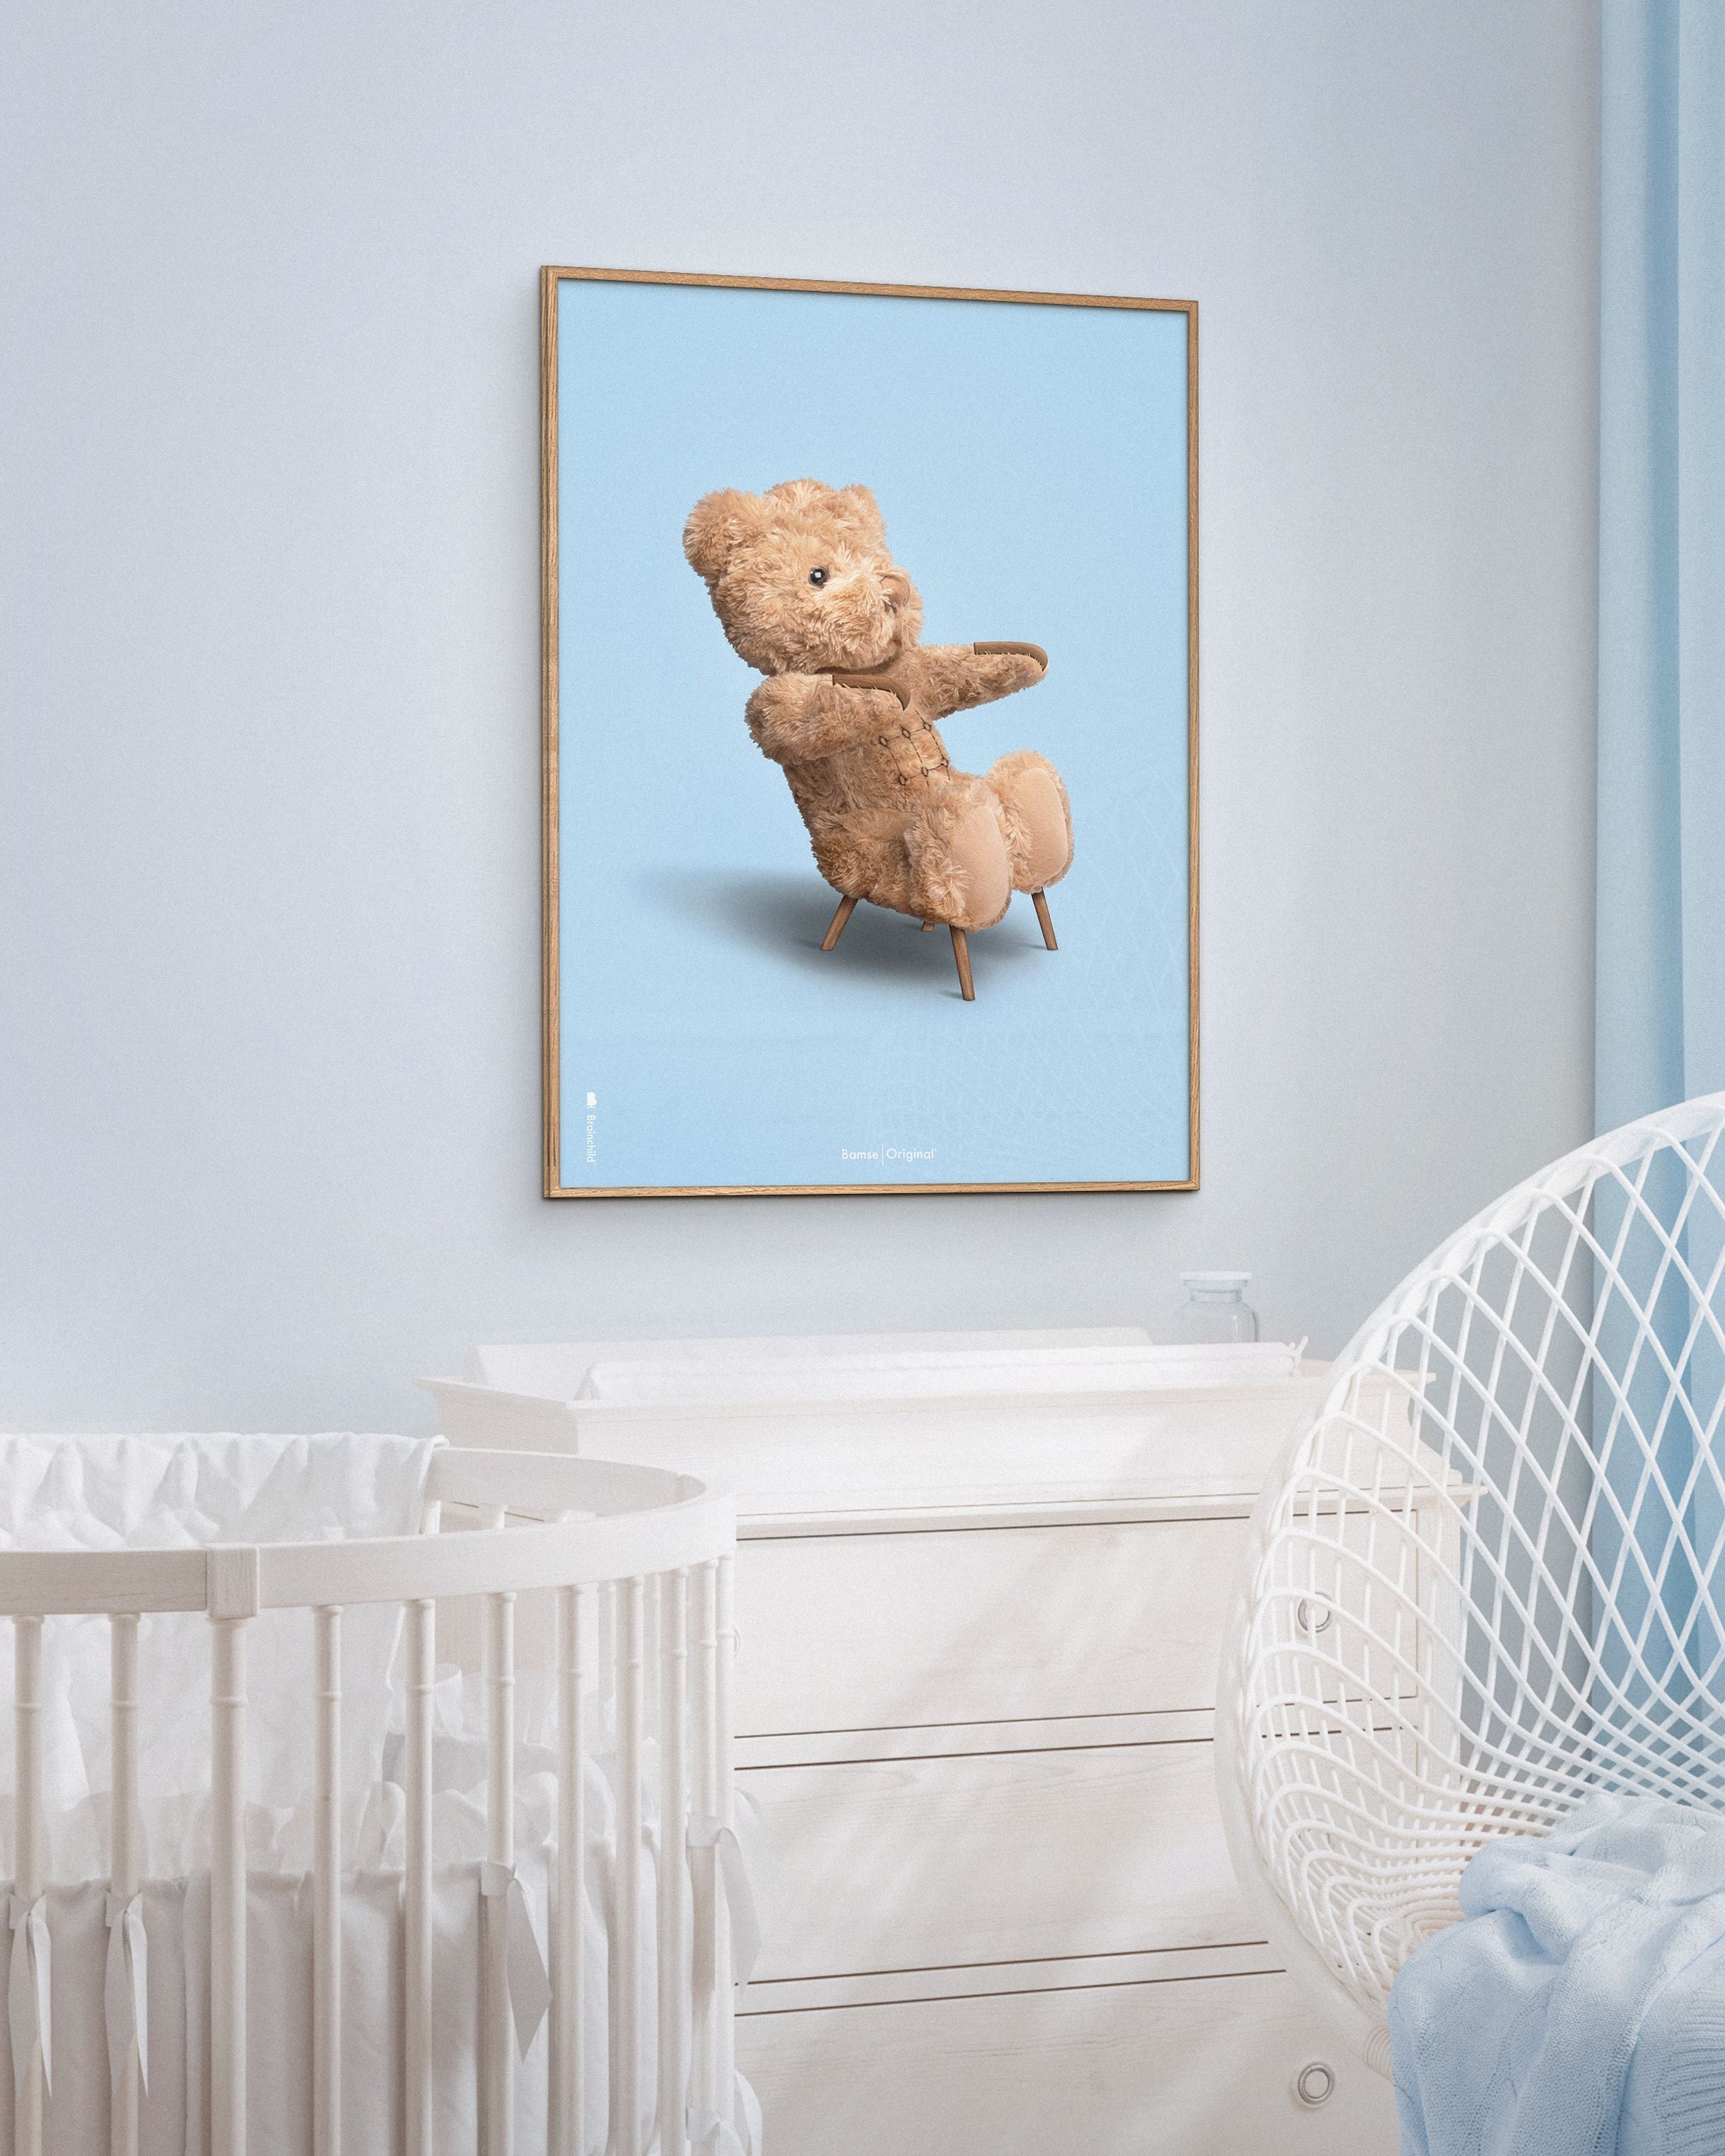 Pomysny plakat Teddy Bear bez ramki 30x40 cm, jasnoniebieskie tło